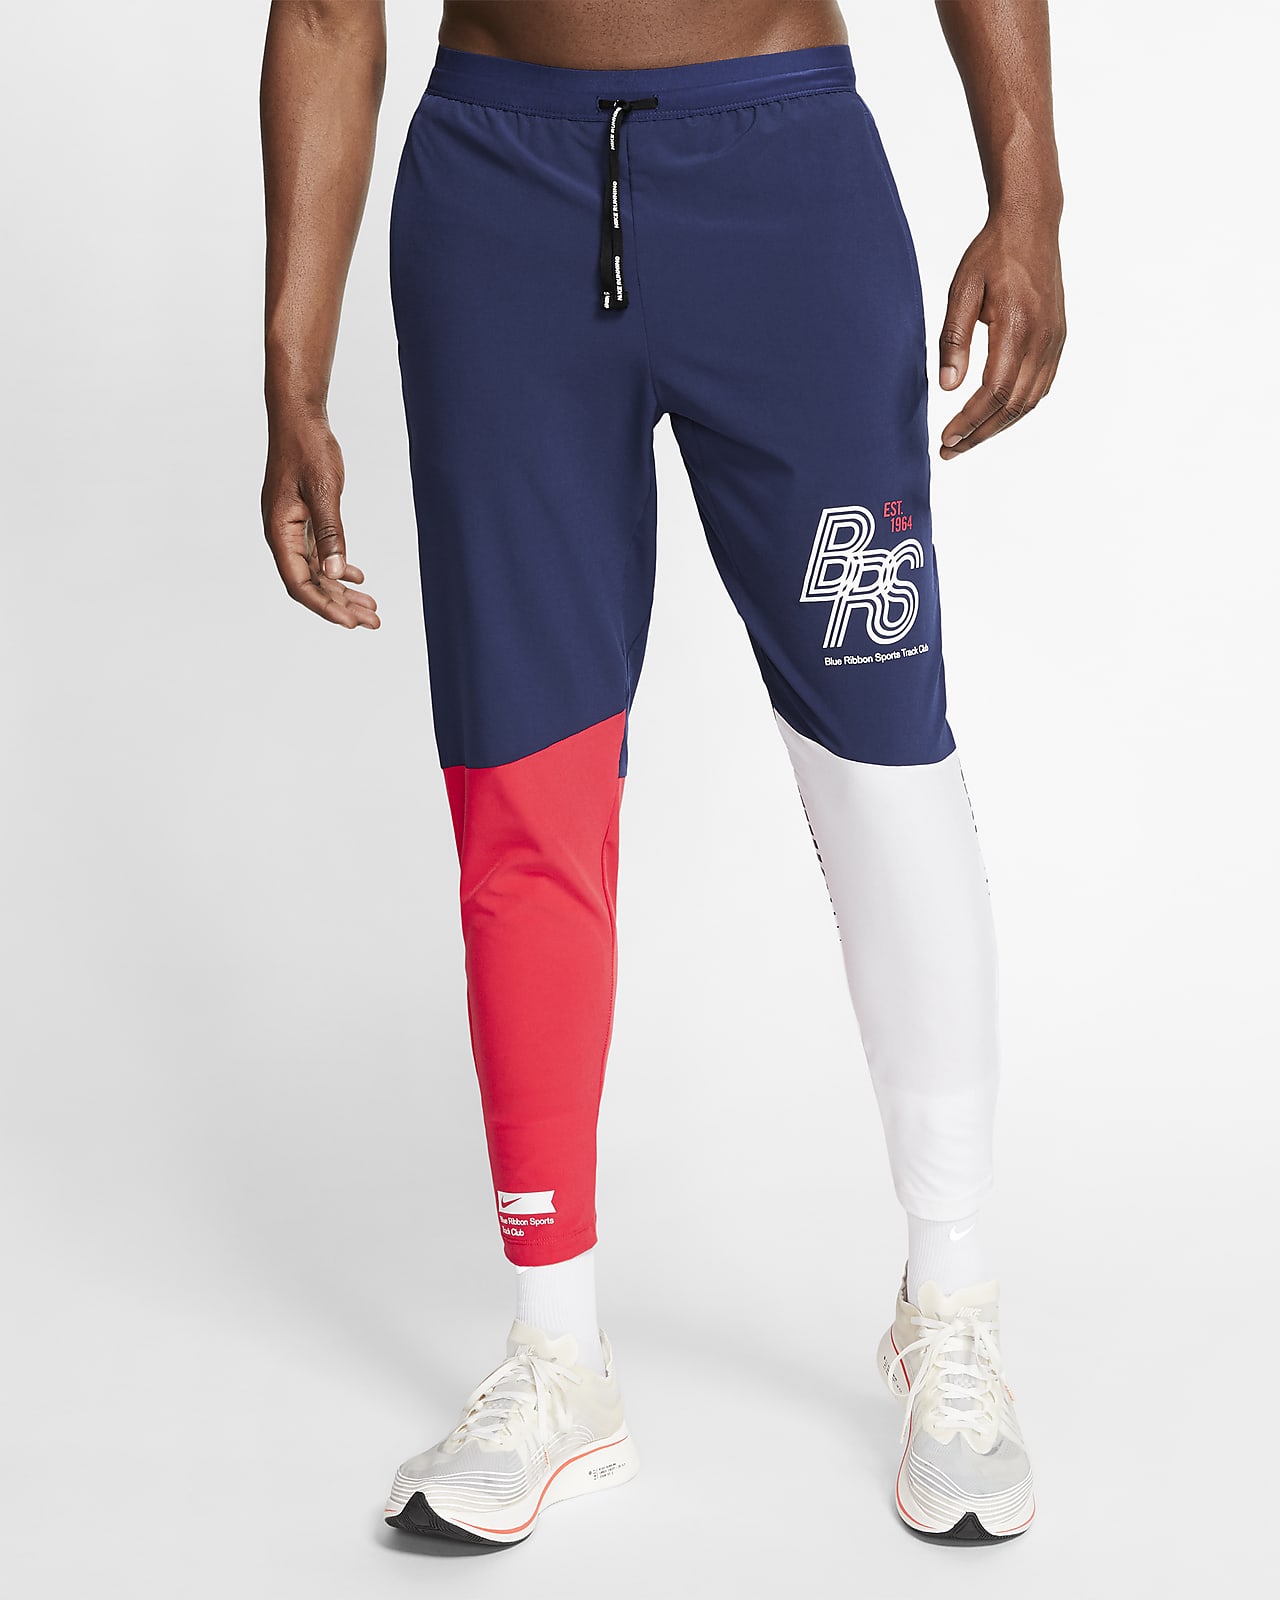 Pantaloni da running Nike Blue Ribbon Sports. Nike IT